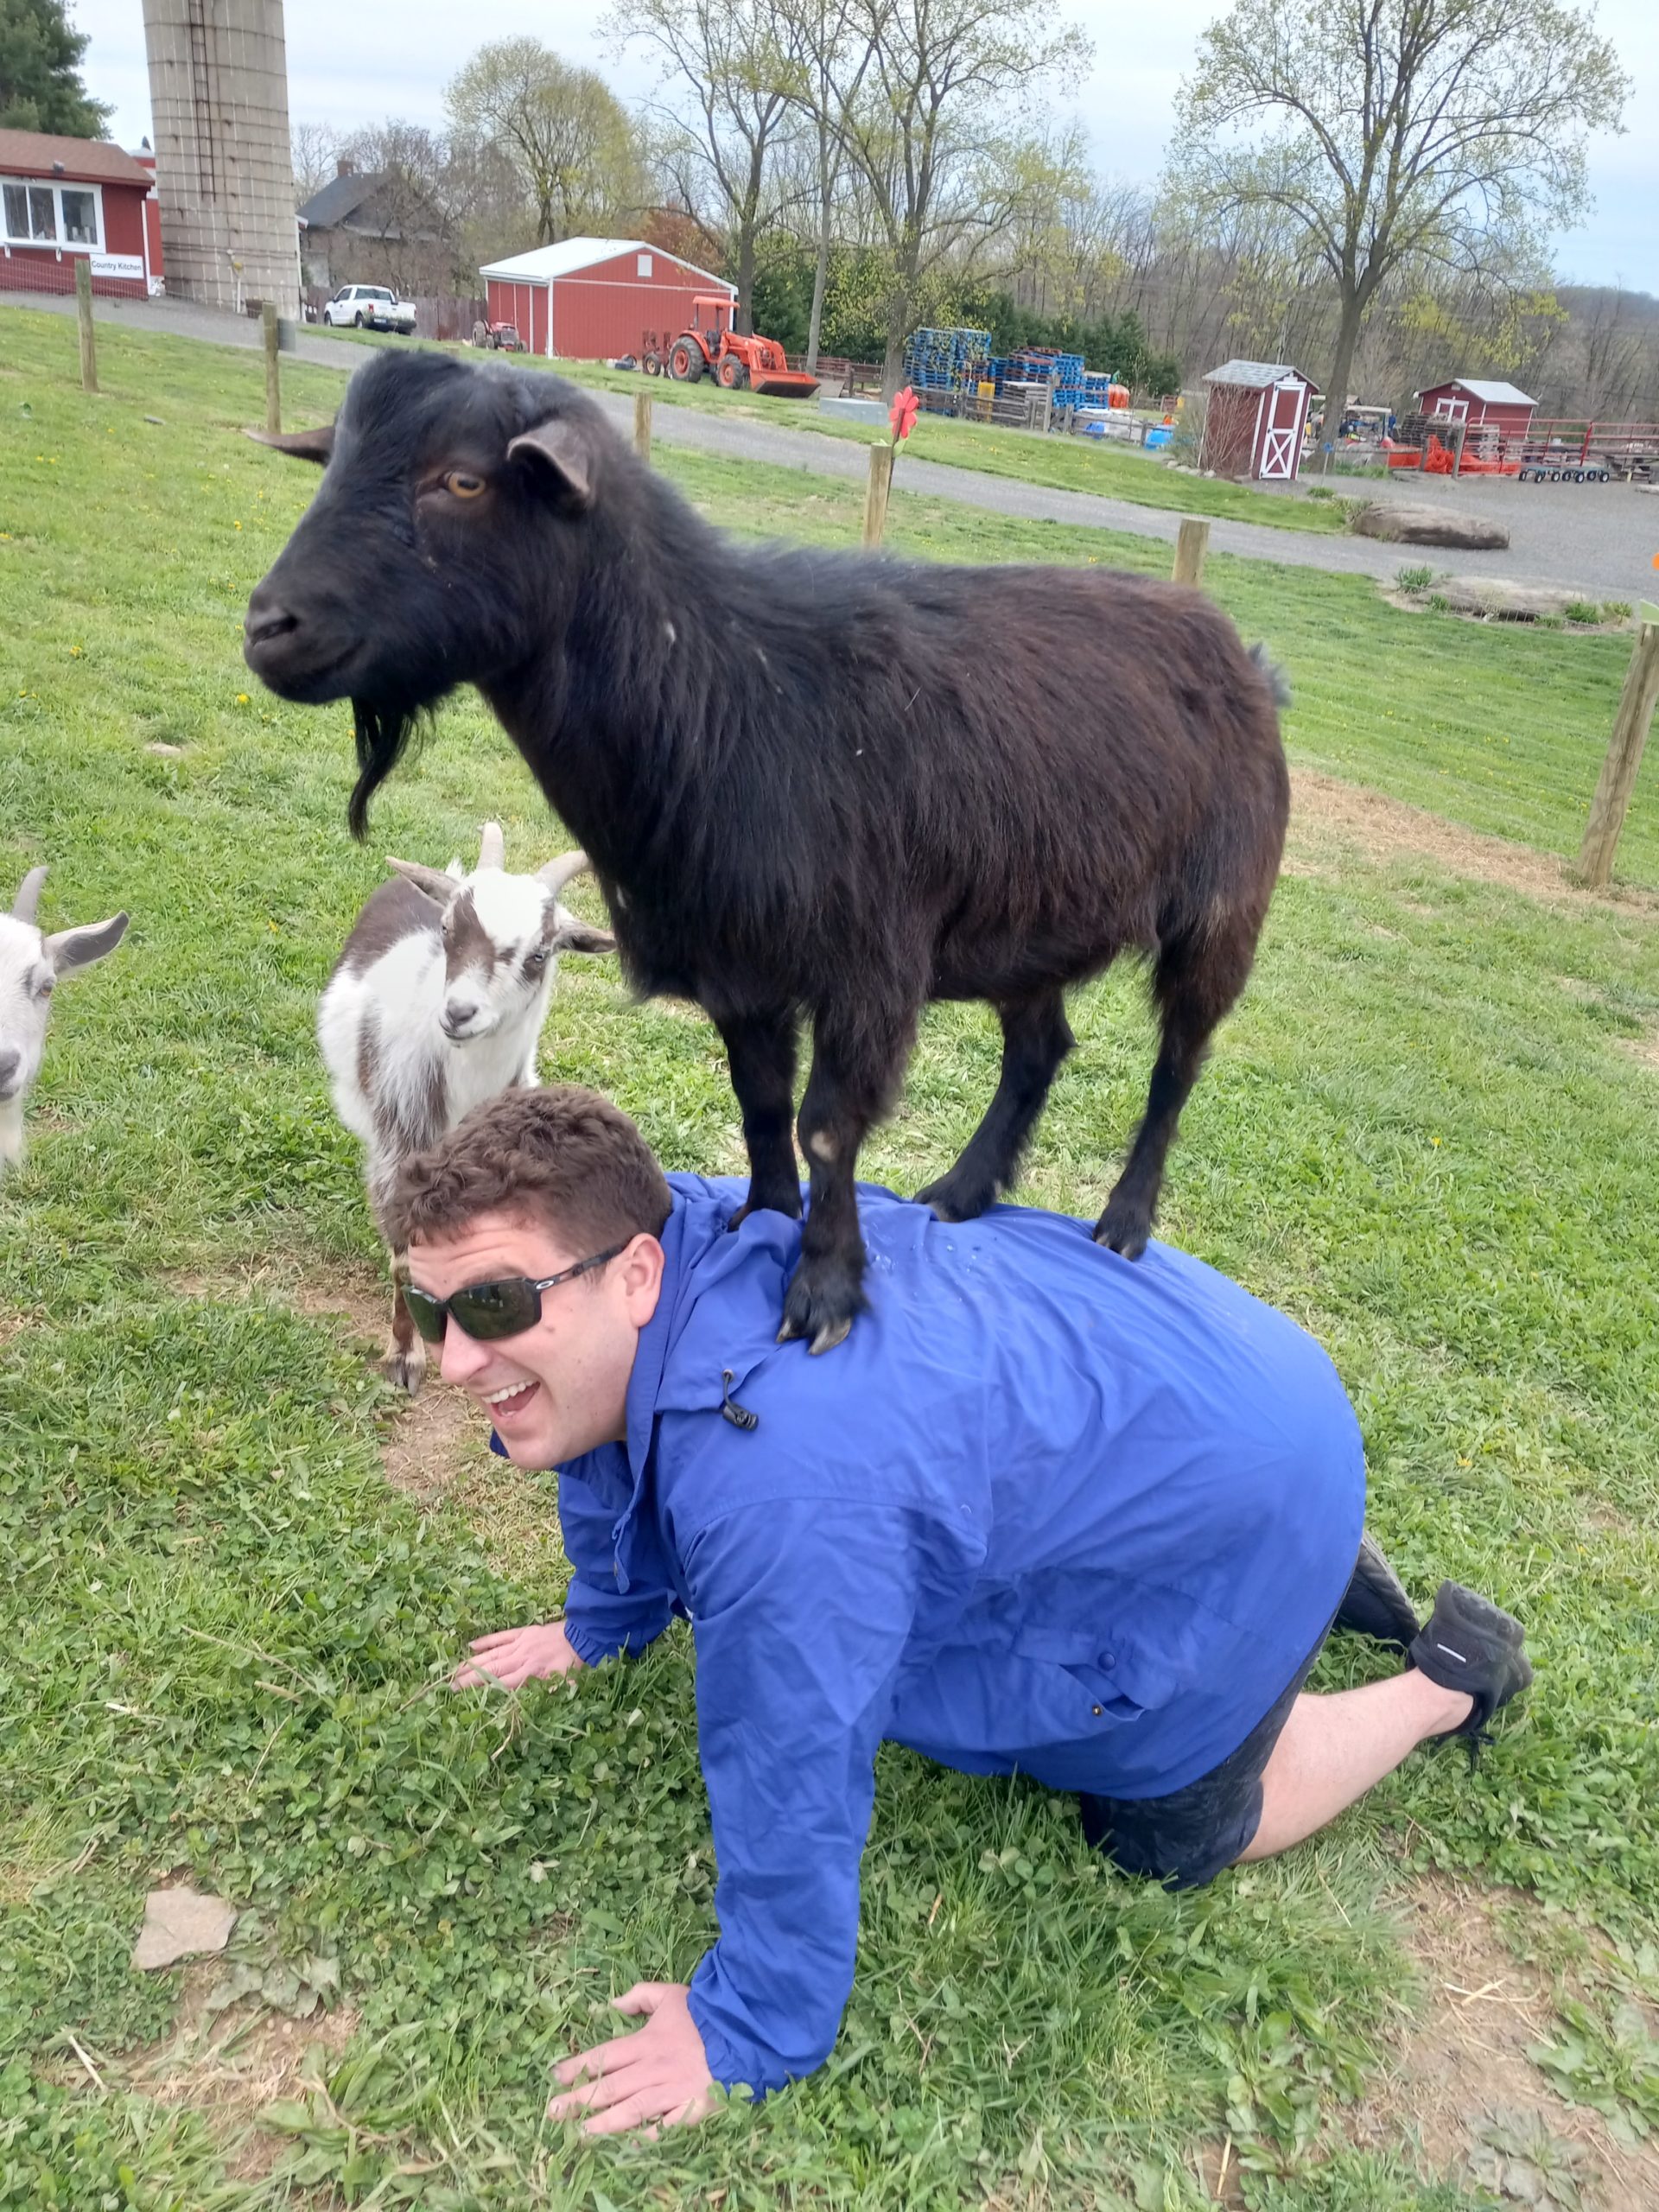 Goat on yogi's back